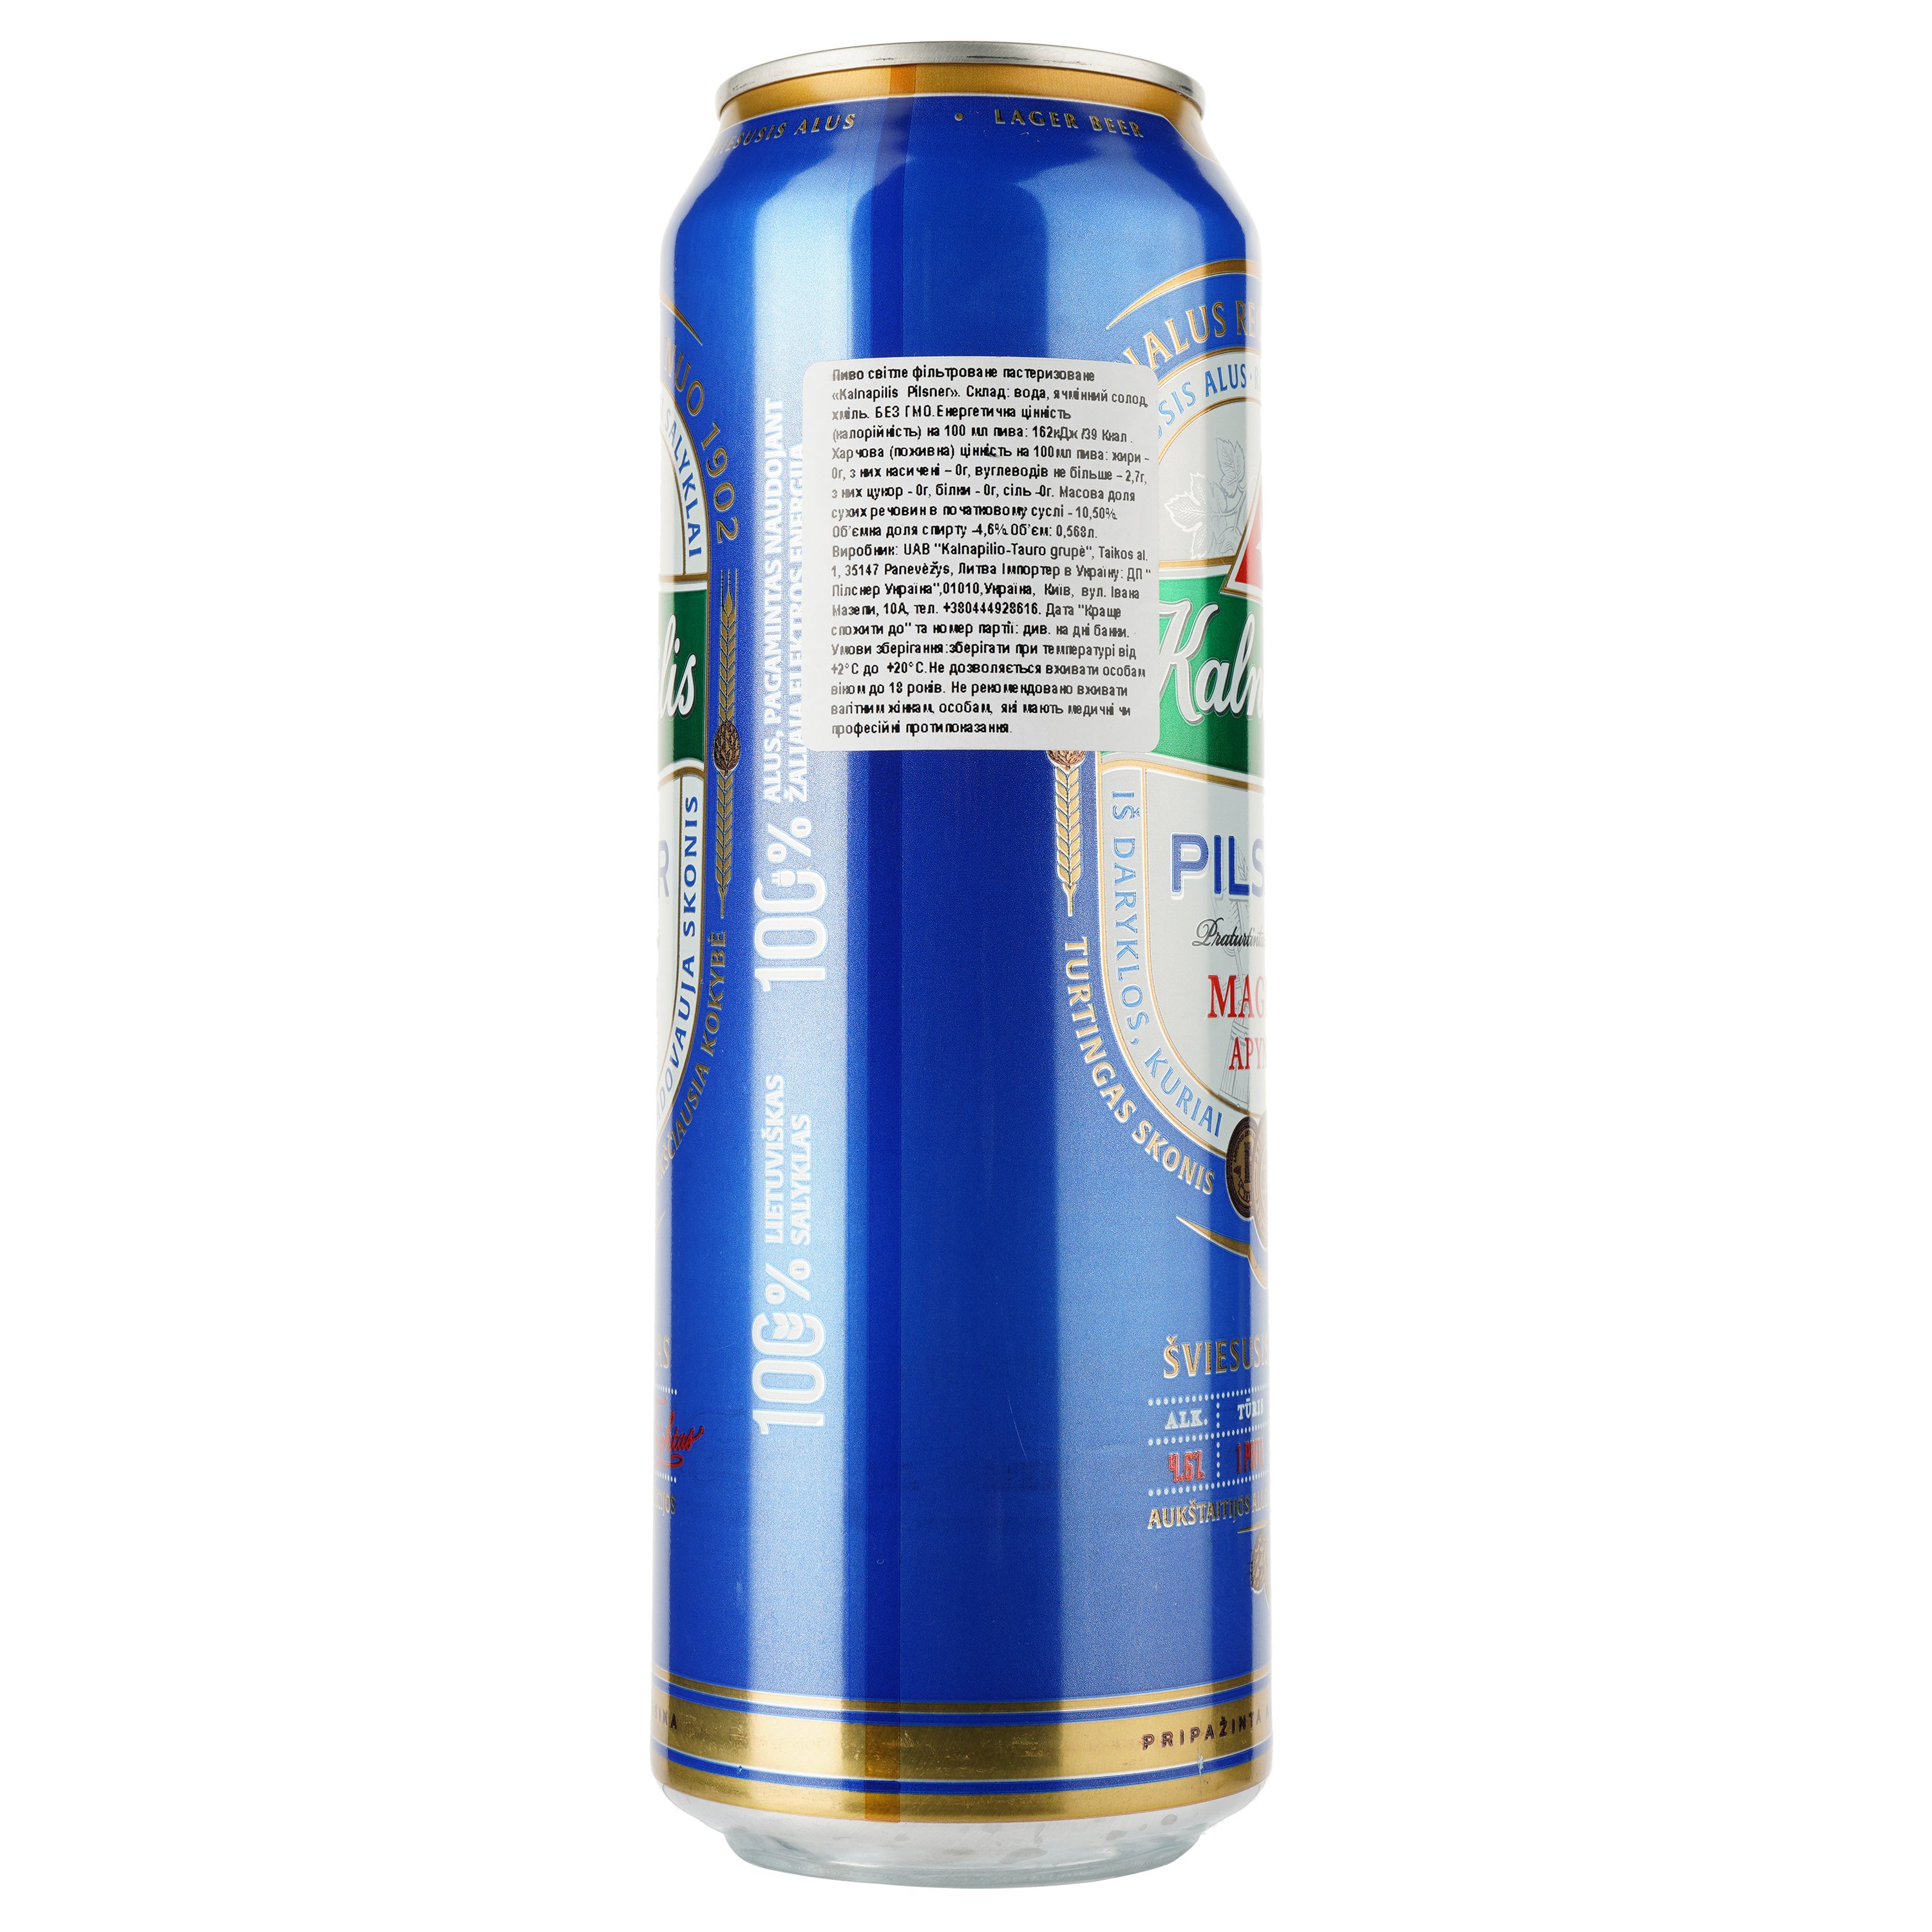 Пиво Kalnapilis Pilsner, светлое, фильтрованное, 4,6%, ж/б, 0,568 л - фото 2